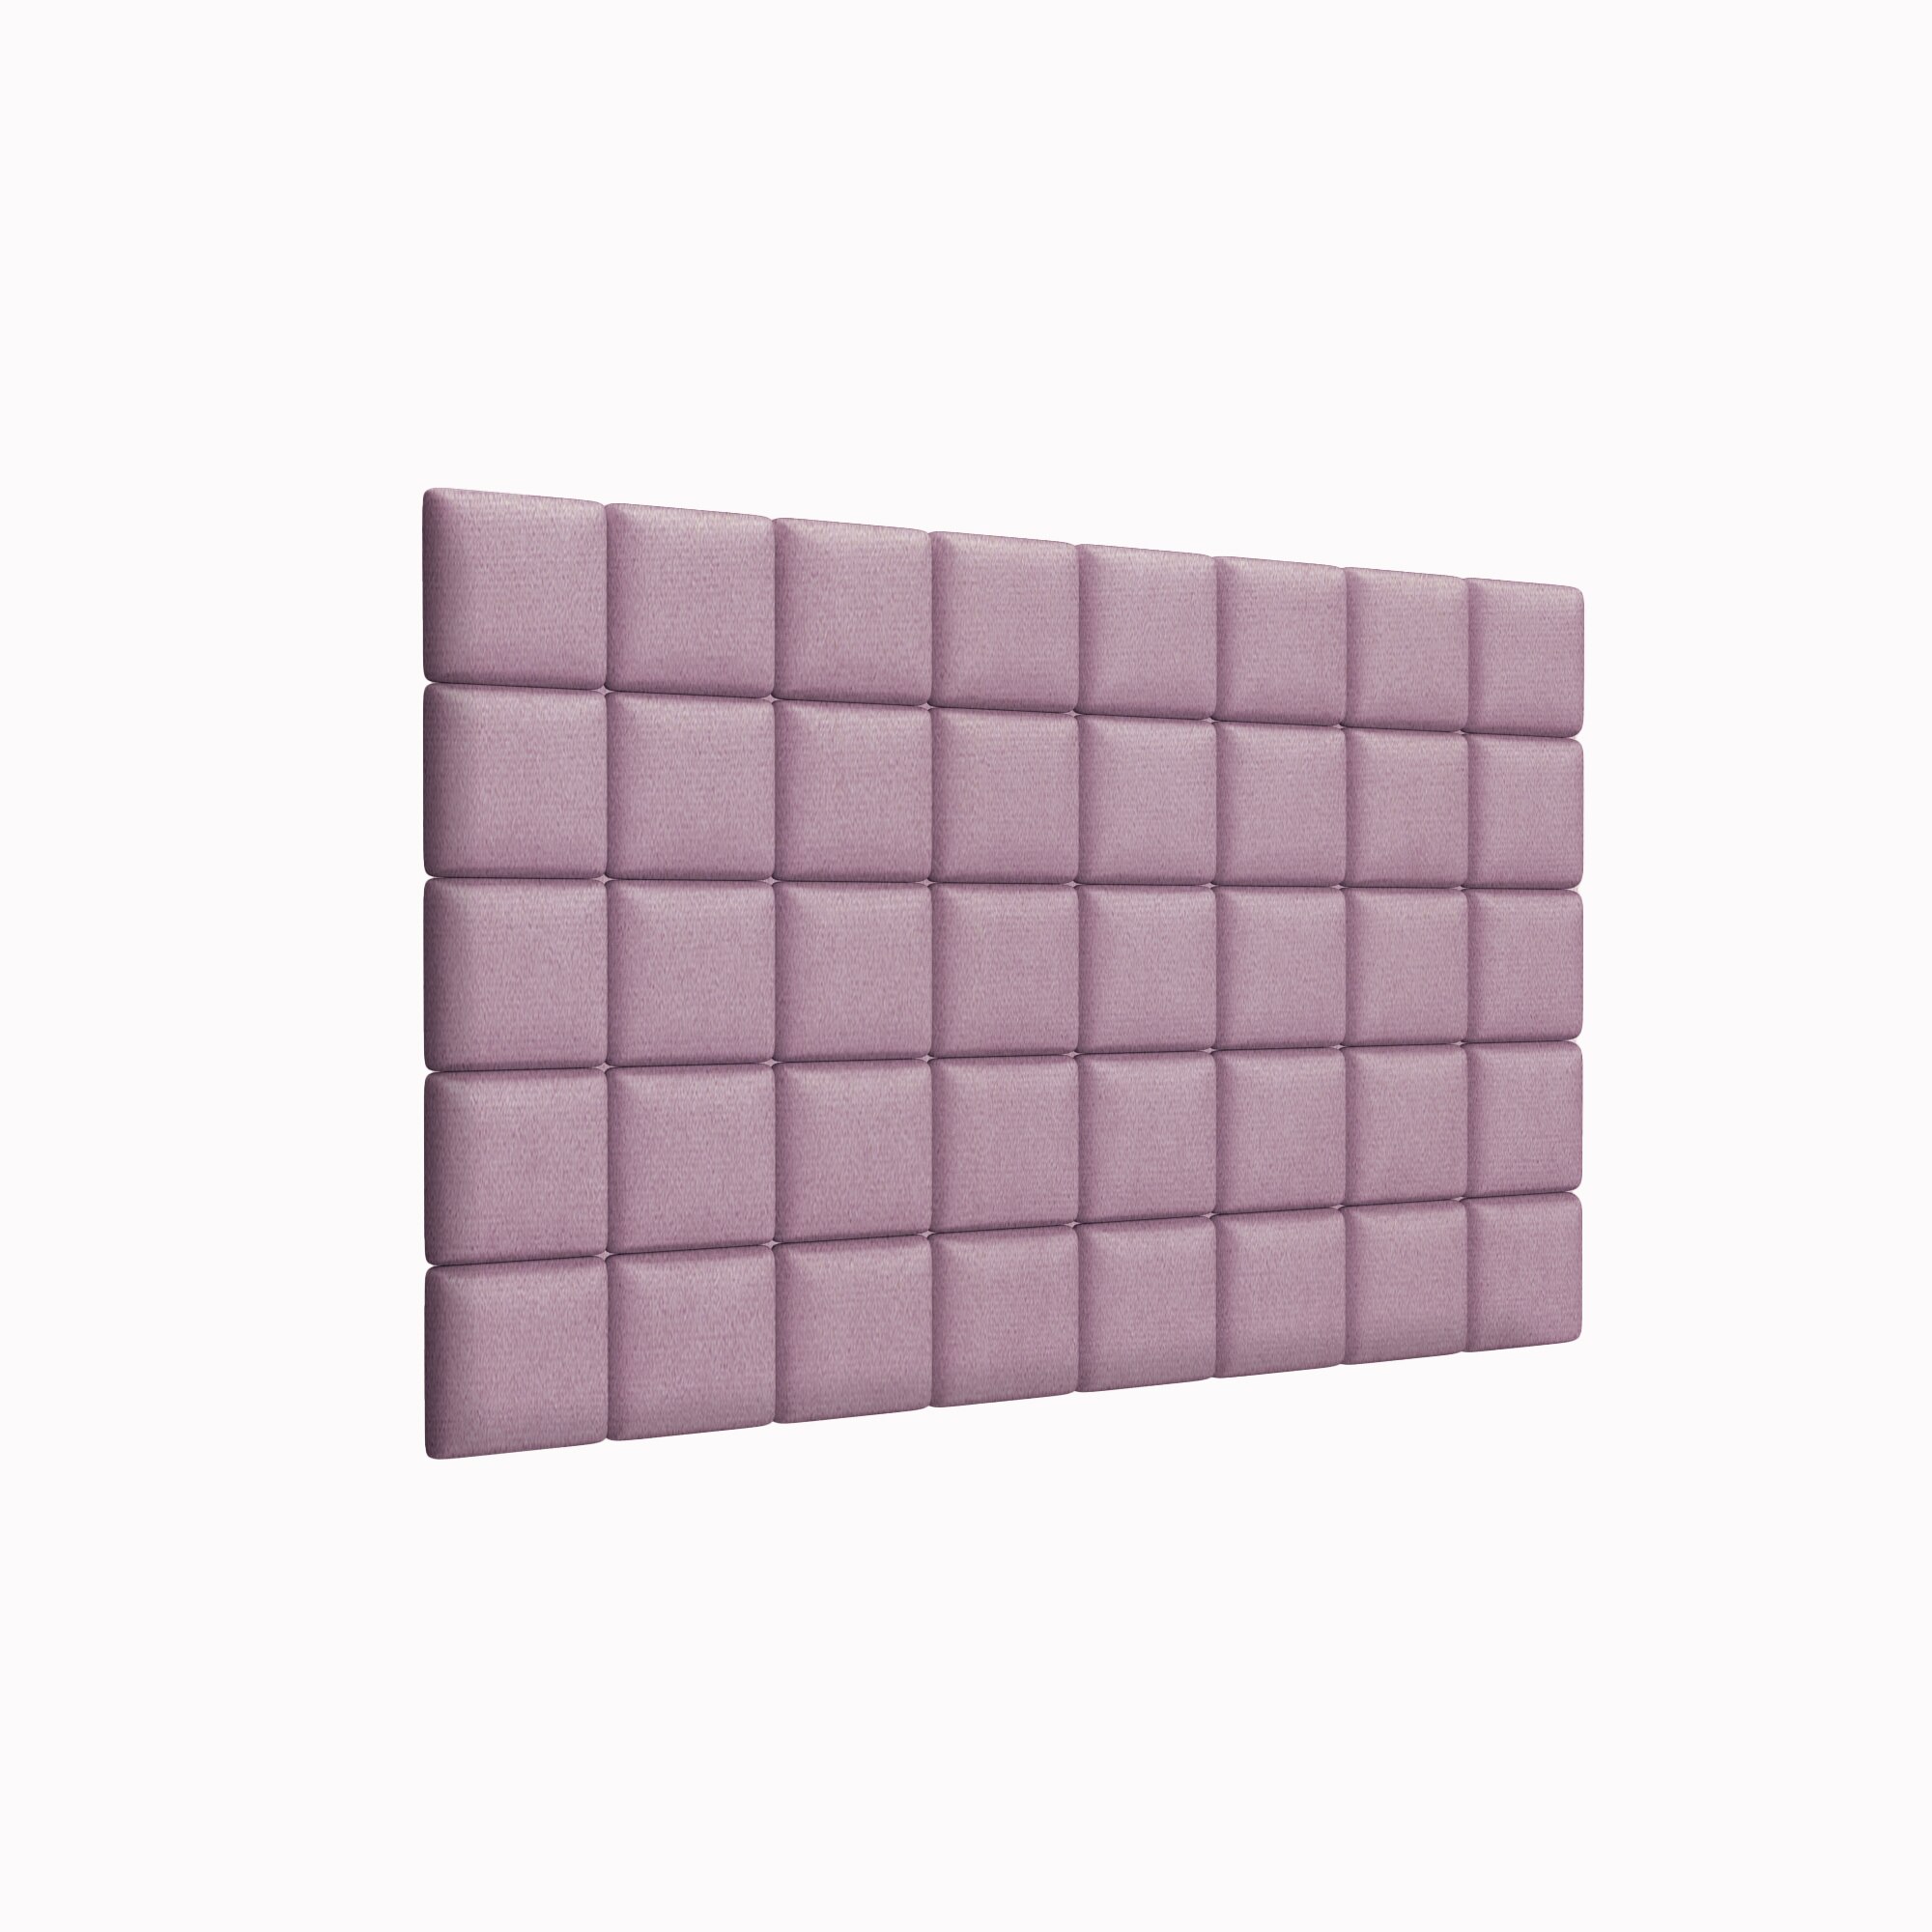 Стеновая панель Velour Pink 15х15 см 8 шт.